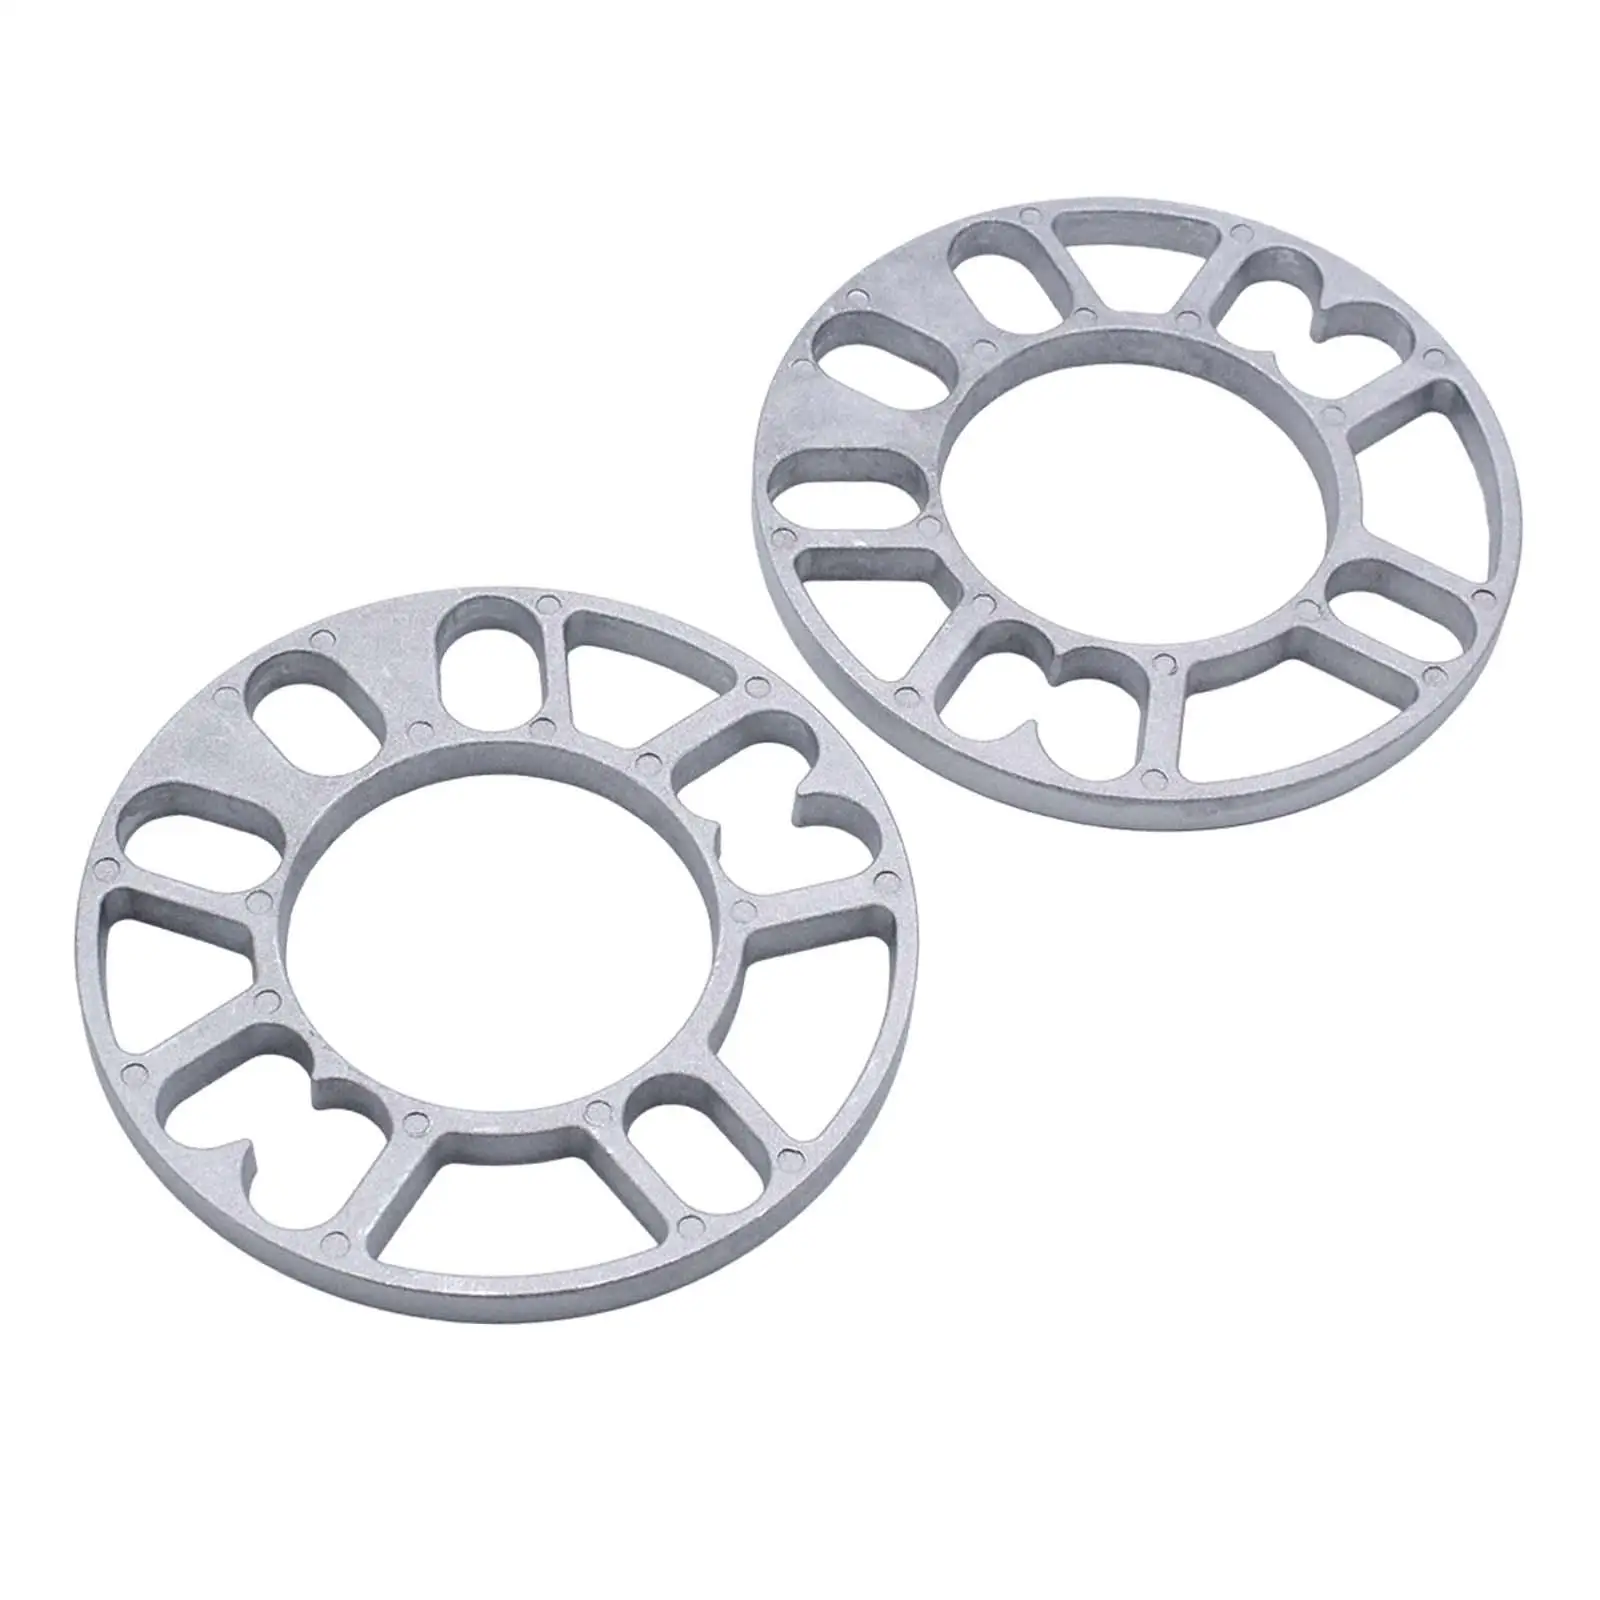 2 Pieces Hub Centric Wheel Spacers Diameter 15cm Aluminum Alloy Accessories for 4/5 Stud Wheel Durable Convenient Assemble